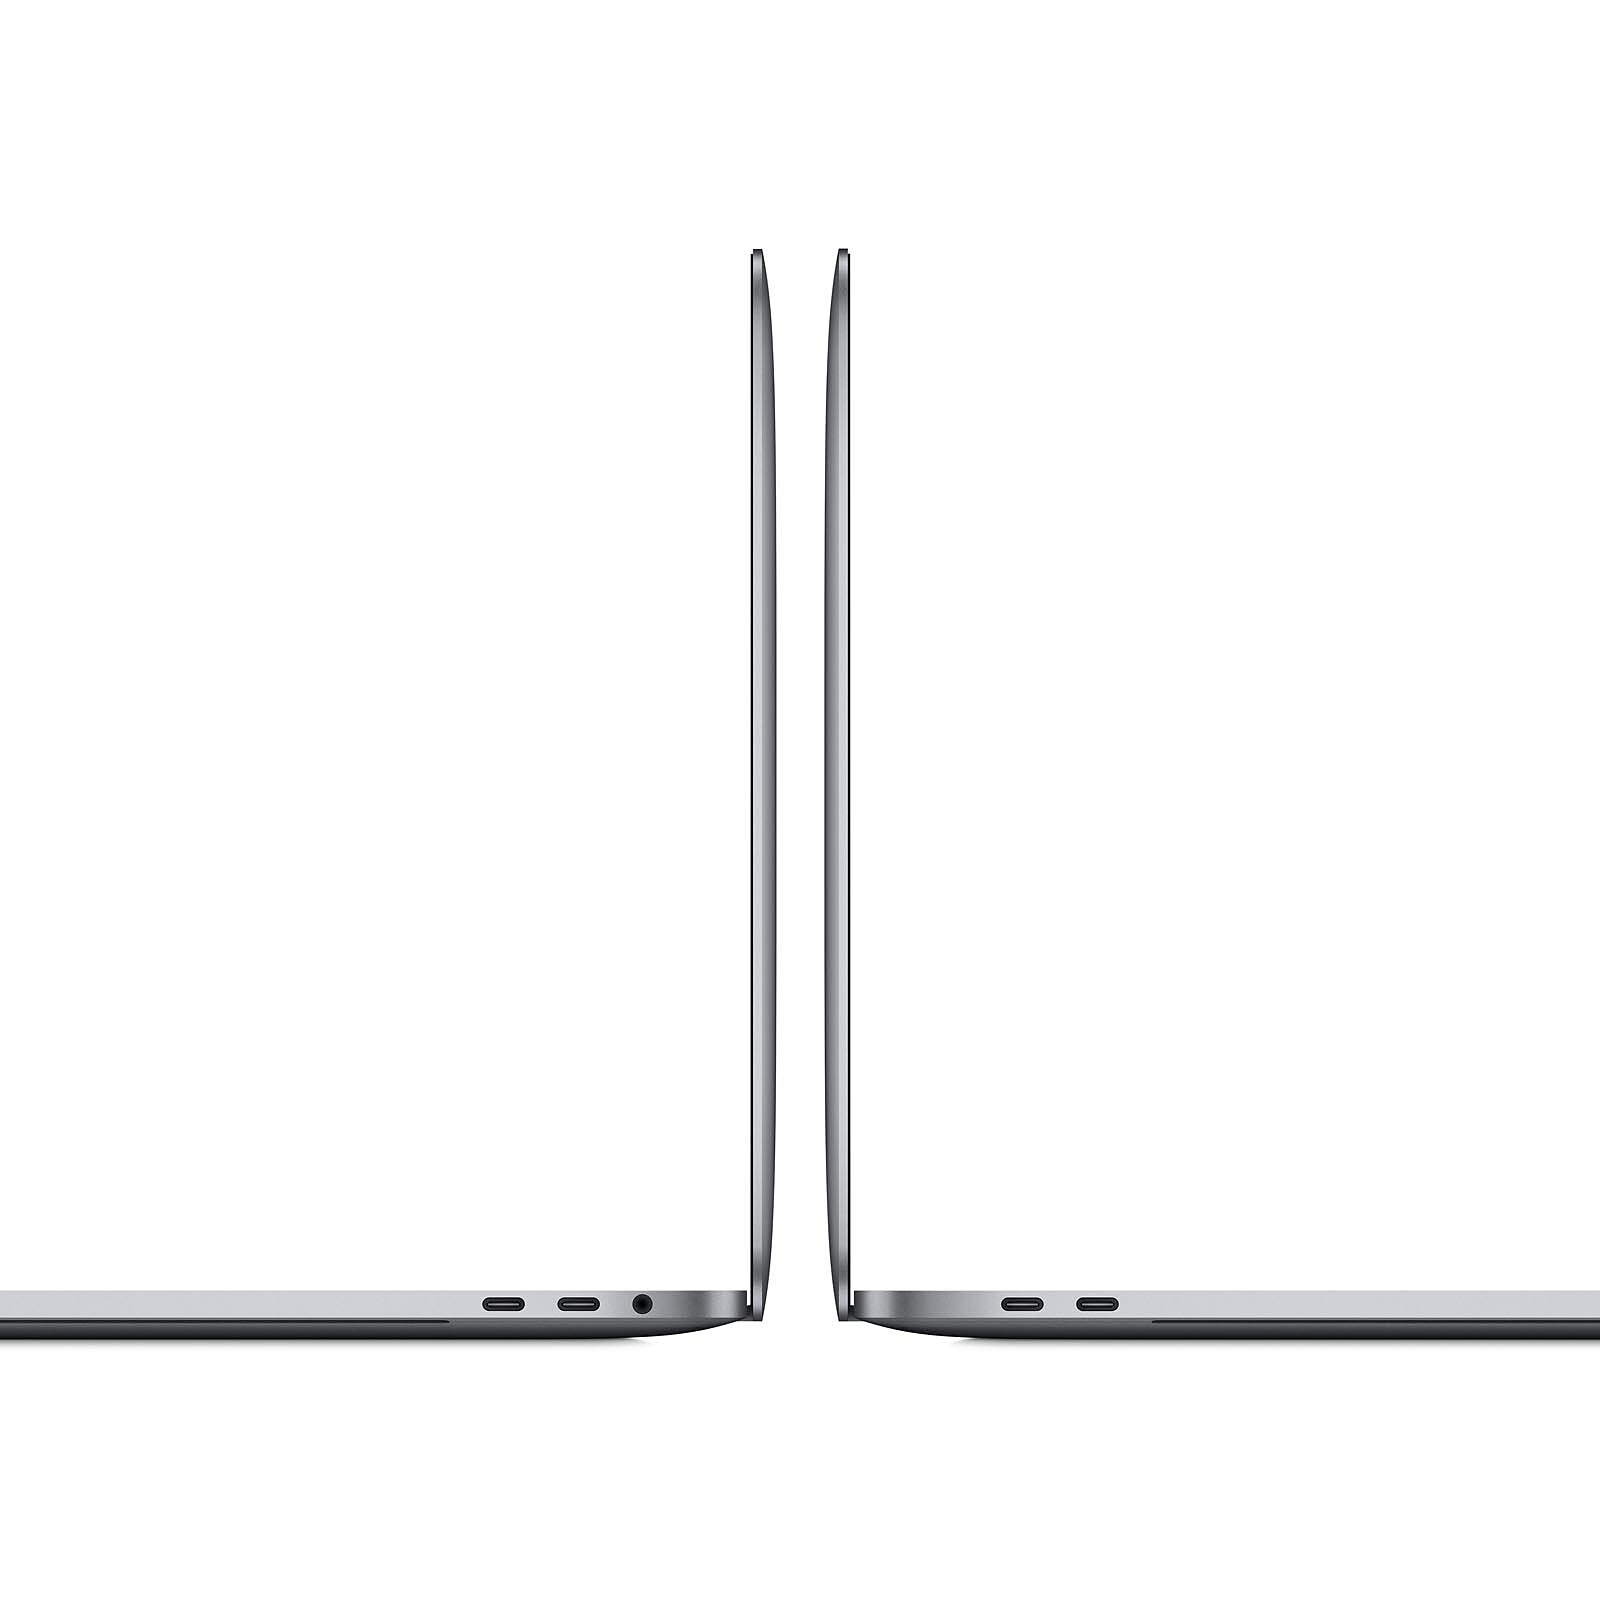 Apple MacBook Pro (2020) 13 avec Touch Bar (MWP42LL/A) Gris sidéral ·  Reconditionné - MacBook reconditionné - LDLC